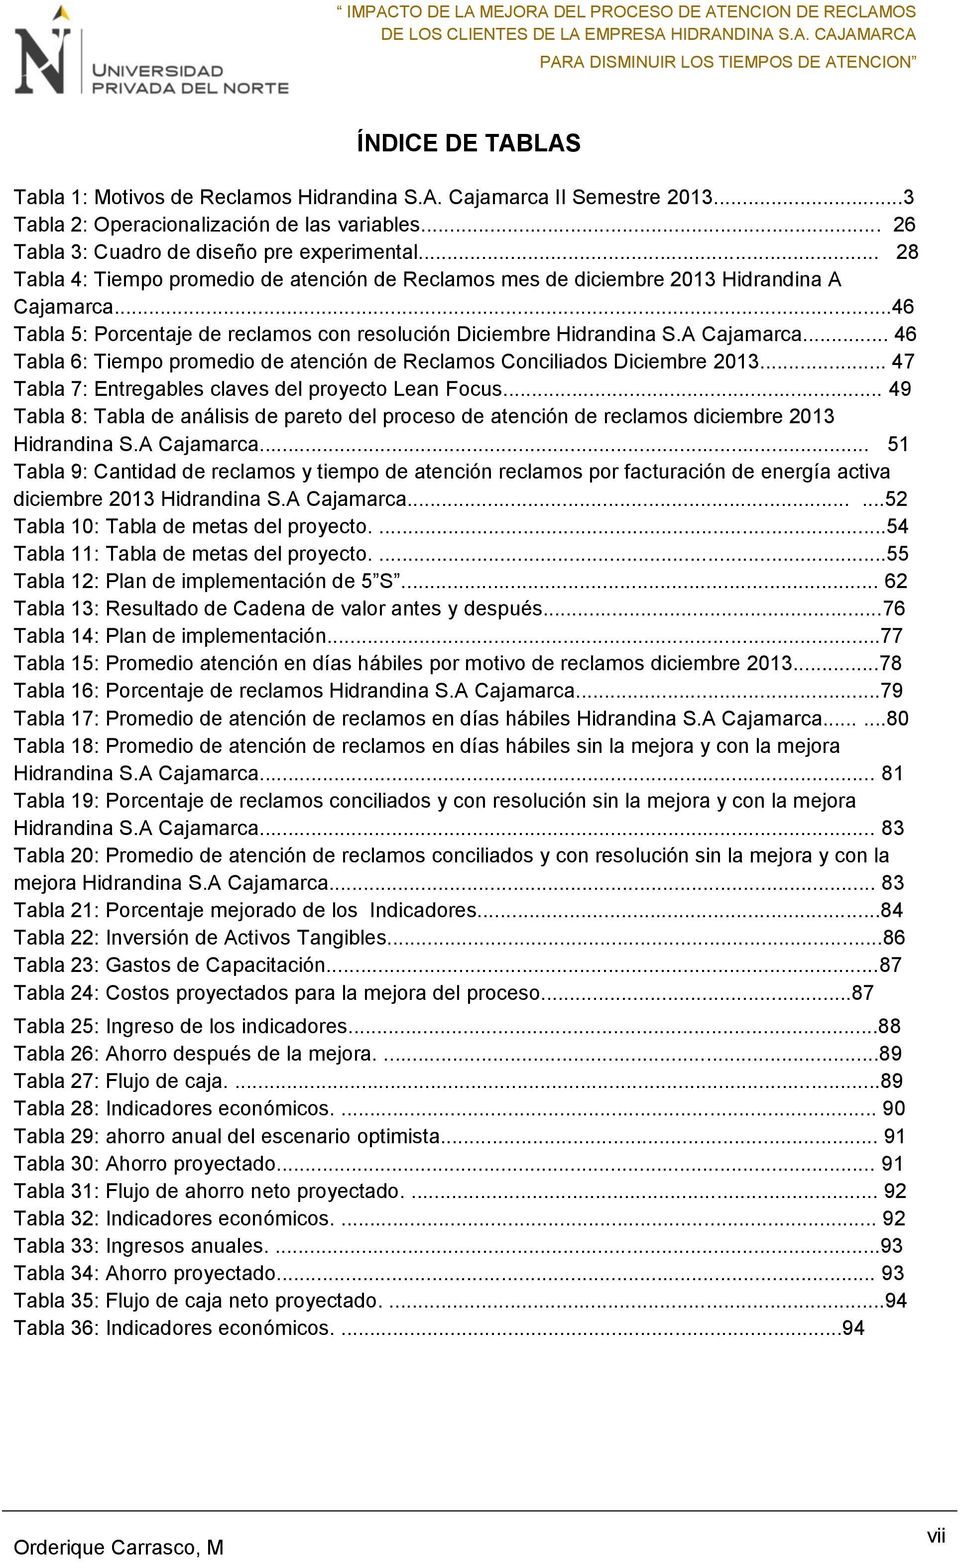 .. 47 Tabla 7: Entregables claves del proyecto Lean Focus... 49 Tabla 8: Tabla de análisis de pareto del proceso de atención de reclamos diciembre 2013 Hidrandina S.A Cajamarca.